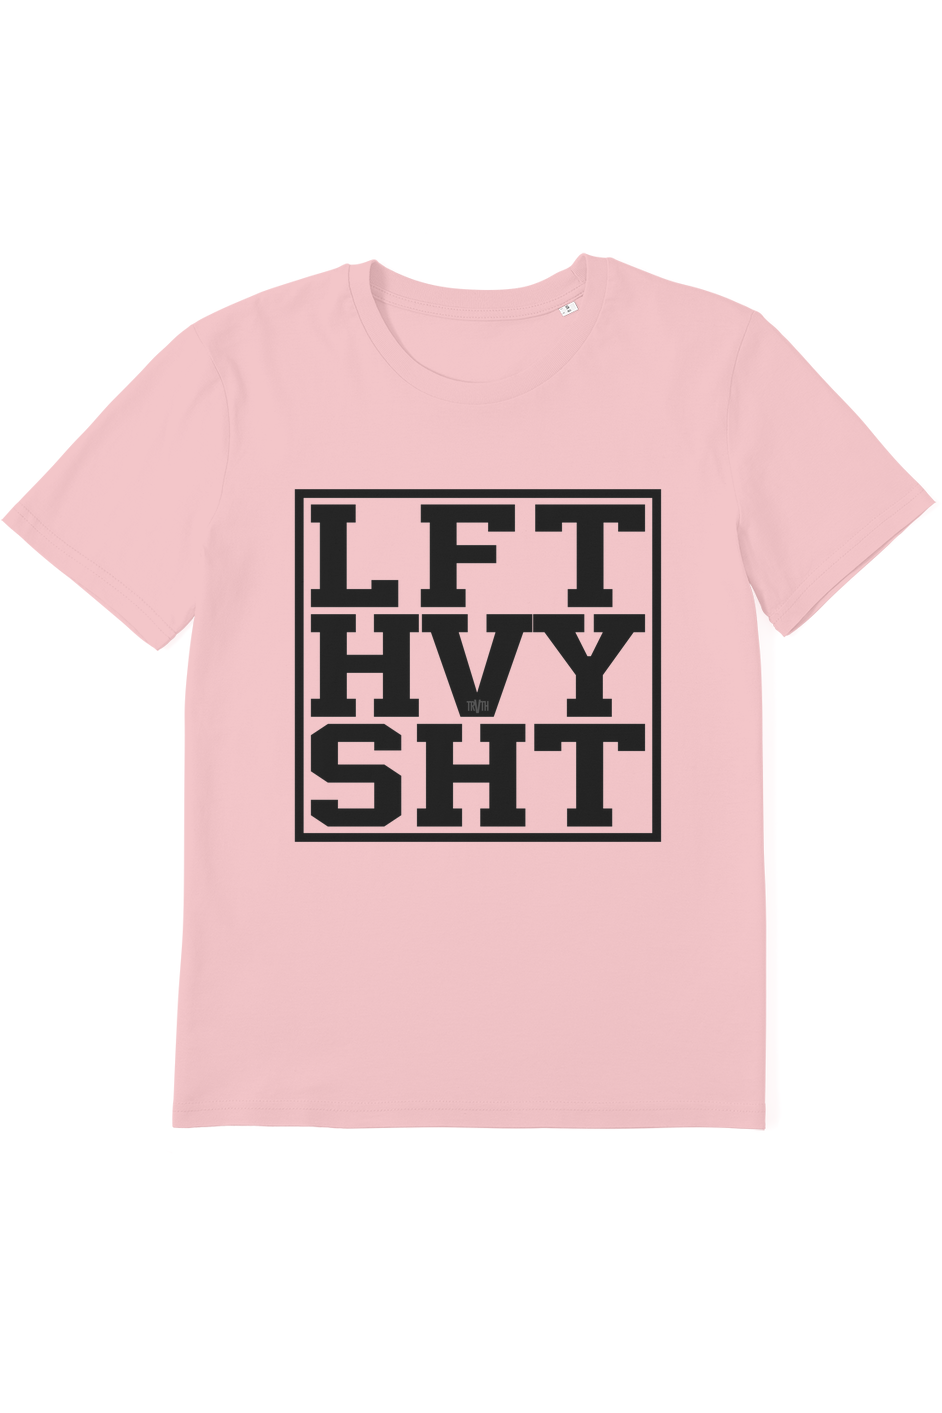 Lift Heavy Ish Organic T-Shirt vegan, sustainable, organic streetwear, - TRVTH ORGANIC CLOTHING